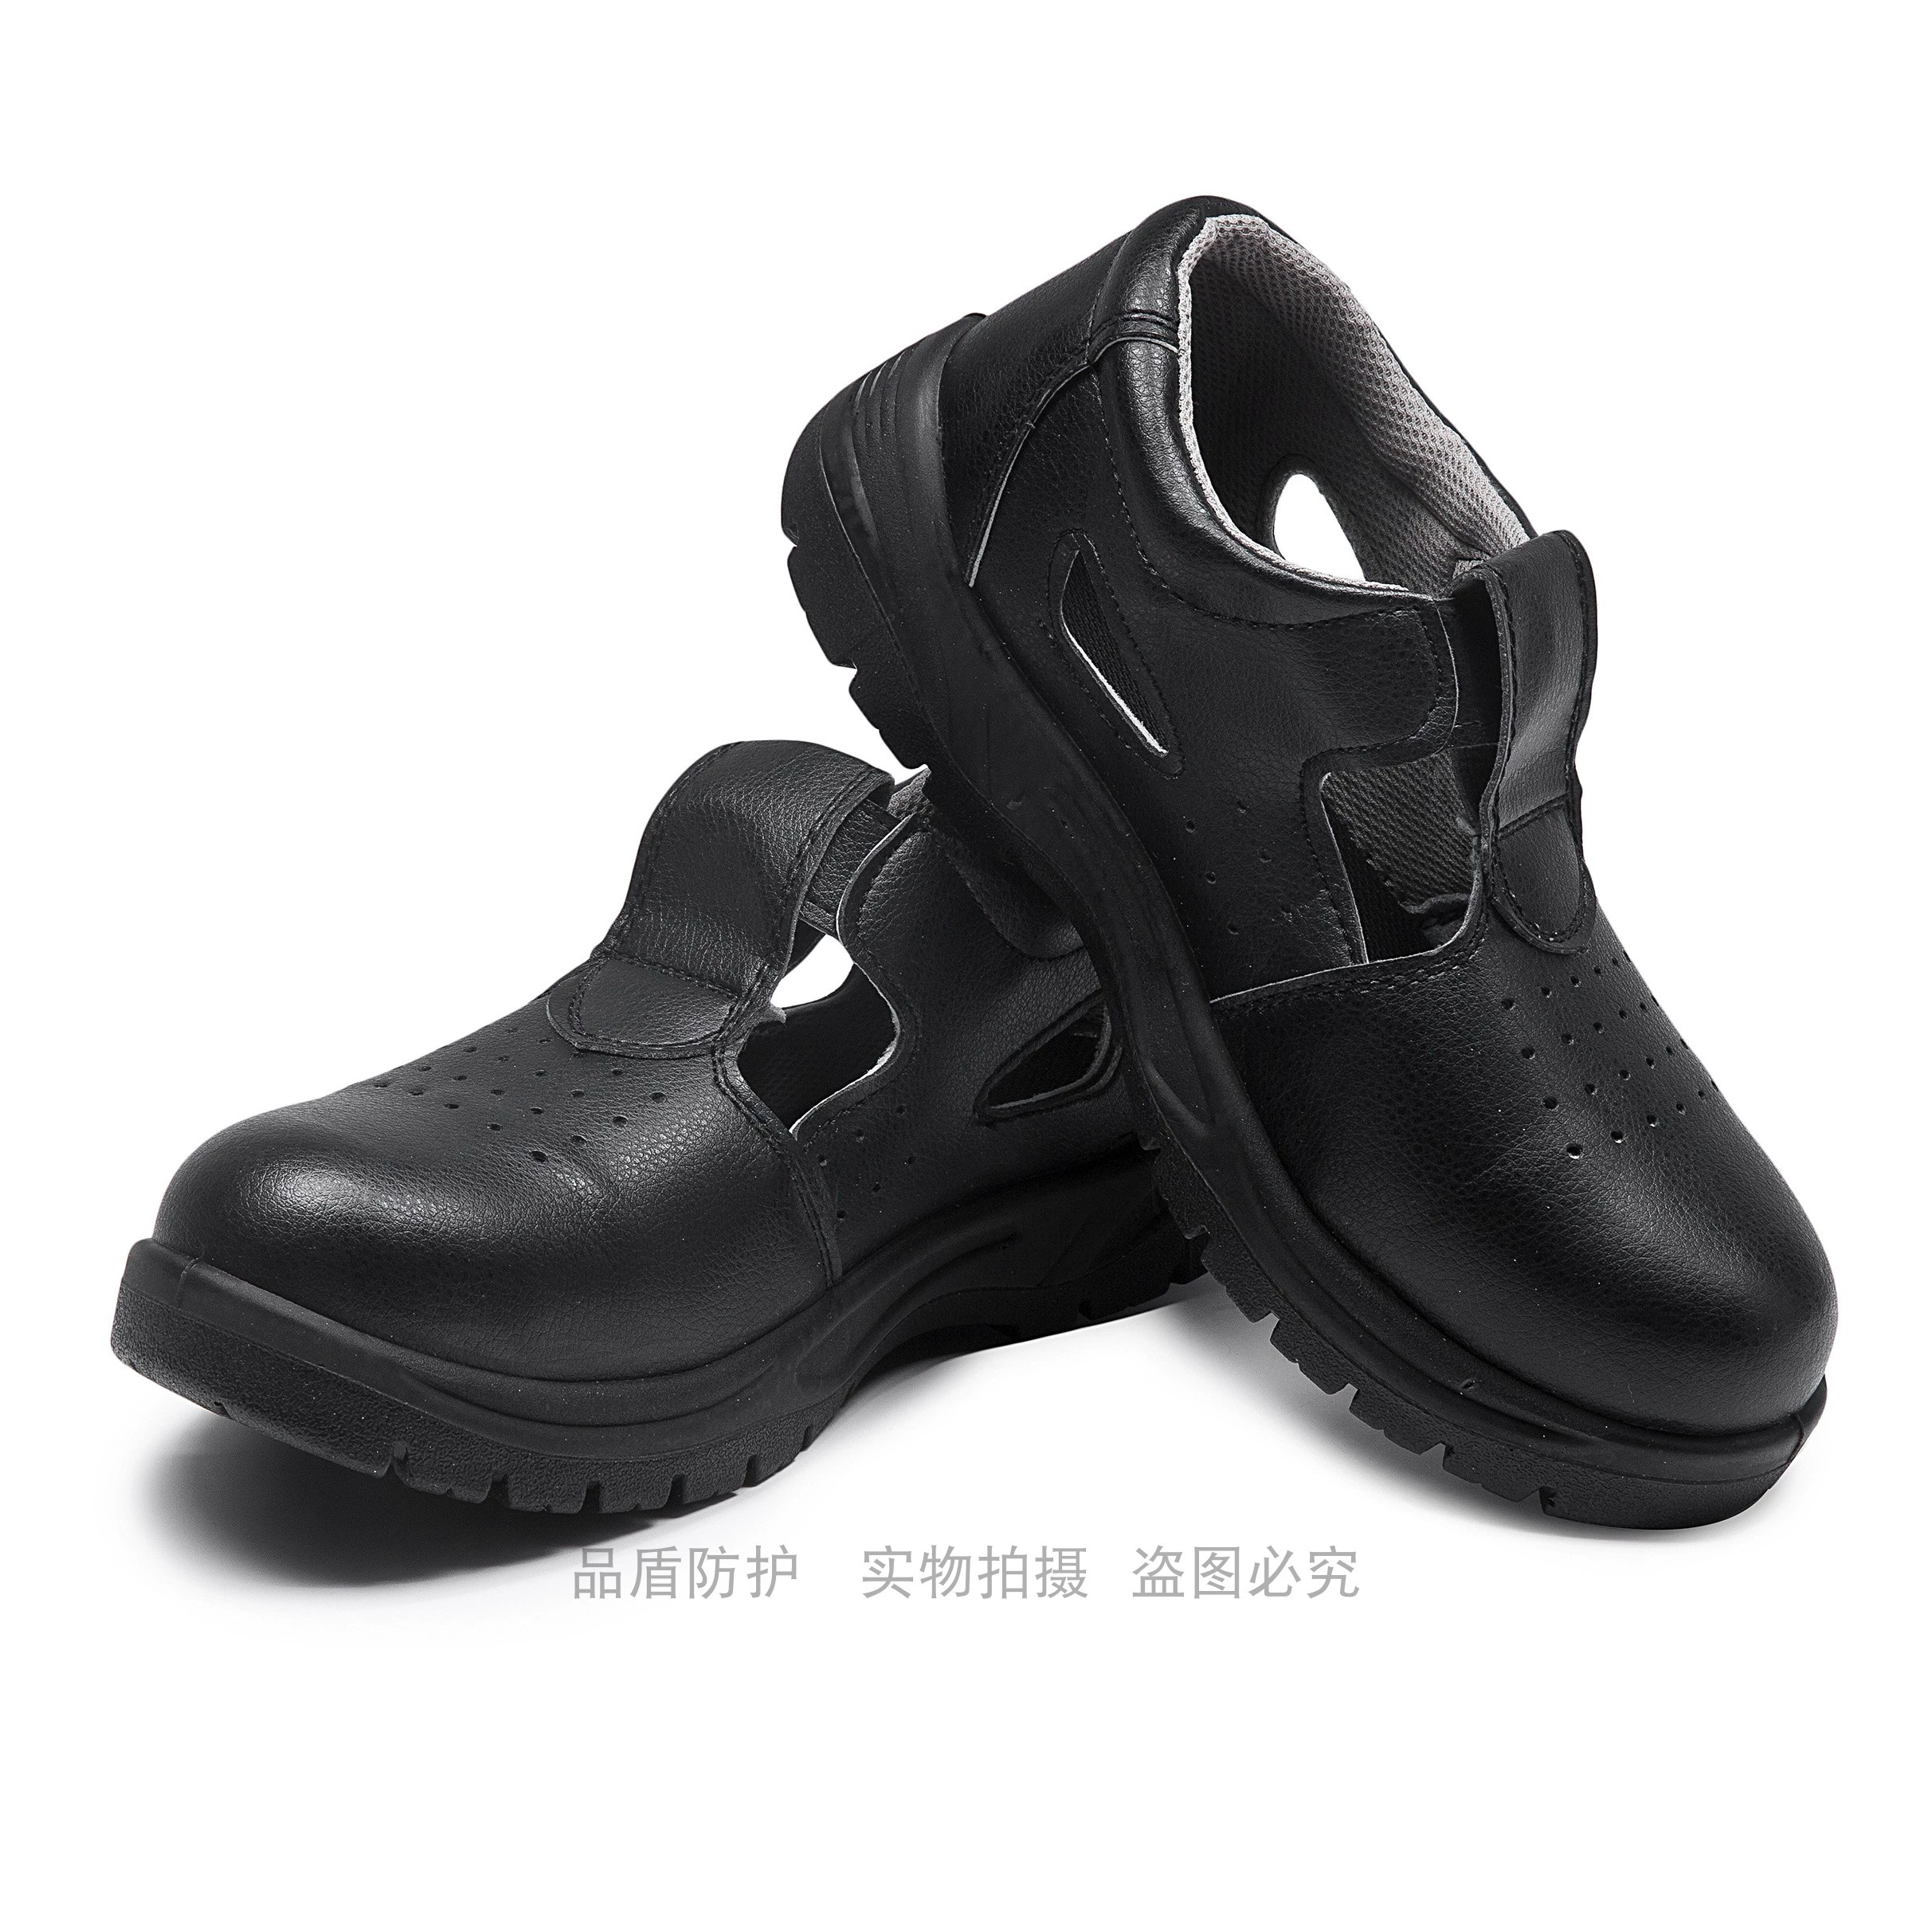 Trắng chống tĩnh chống đập chống xỏ giày an toàn thép ngón chân giày an toàn thực phẩm nhà xưởng nhà máy sạch sẽ trượt 